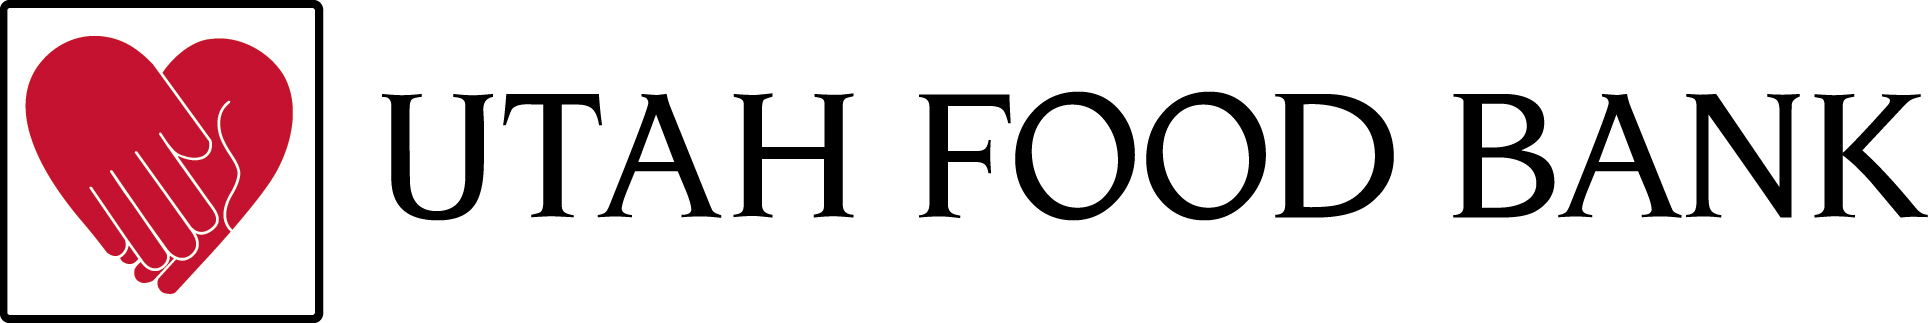 Utah Food Bank logo